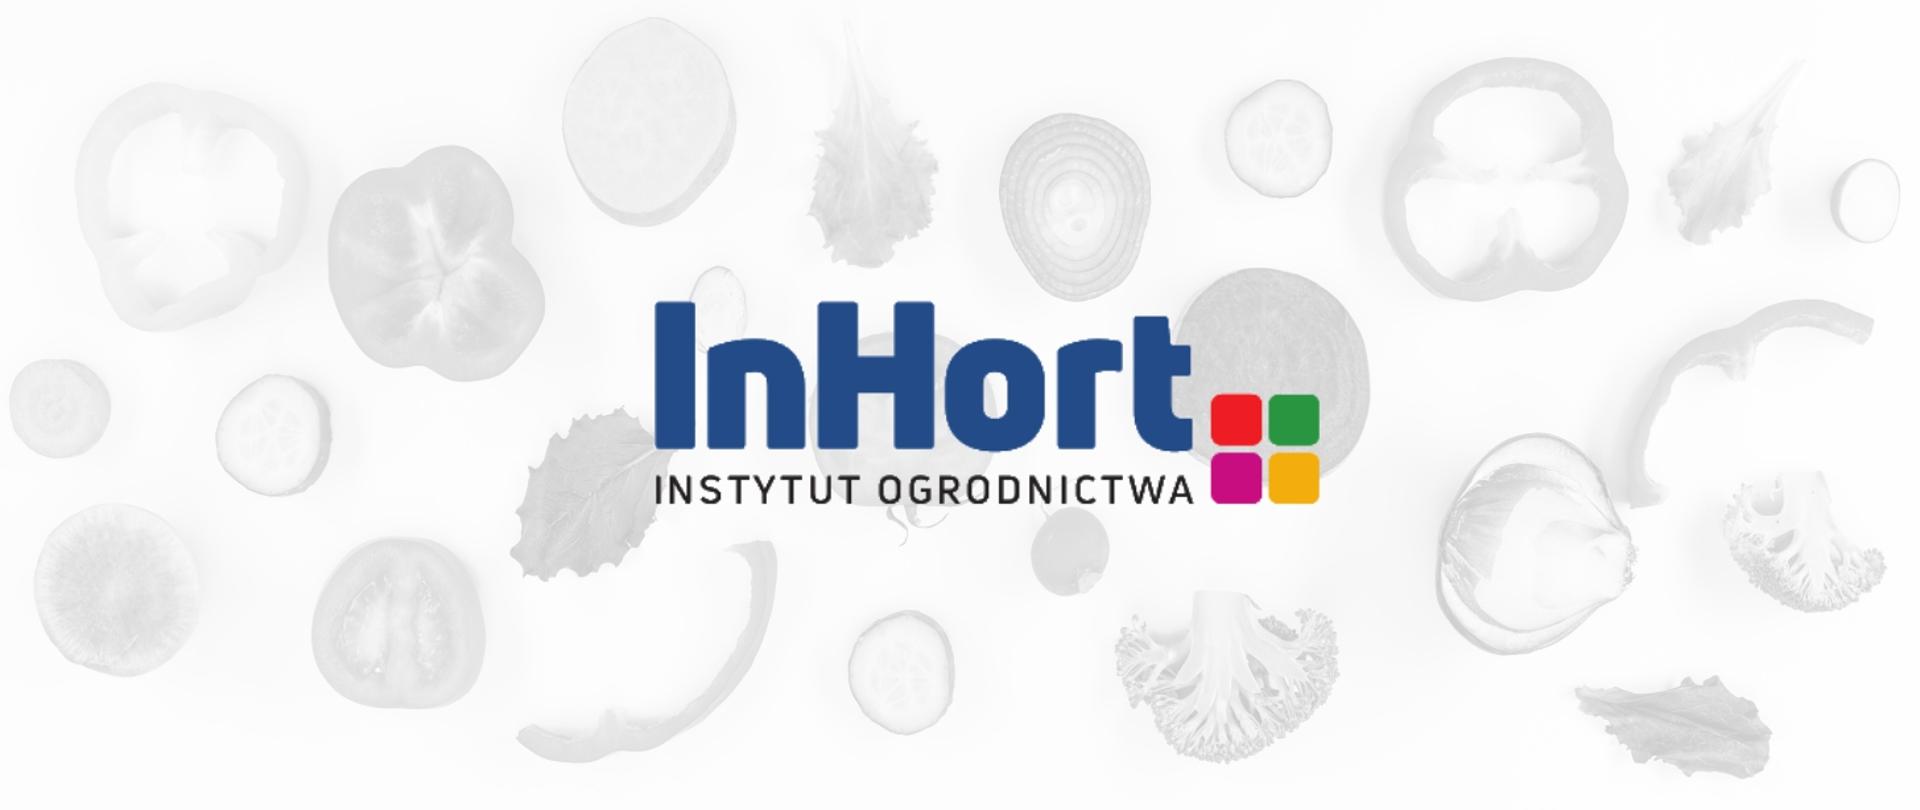 Grafika przedstawia logo Instytutu Ogrodnictwa, które składa się z niebieskiego napisu "InHort", poniżej znajduje się napis "Instytut ogrodnictwa". Na prawo cztery kolorowe kwadraty. W tle znajdują się pocięte w plastry warzywa.